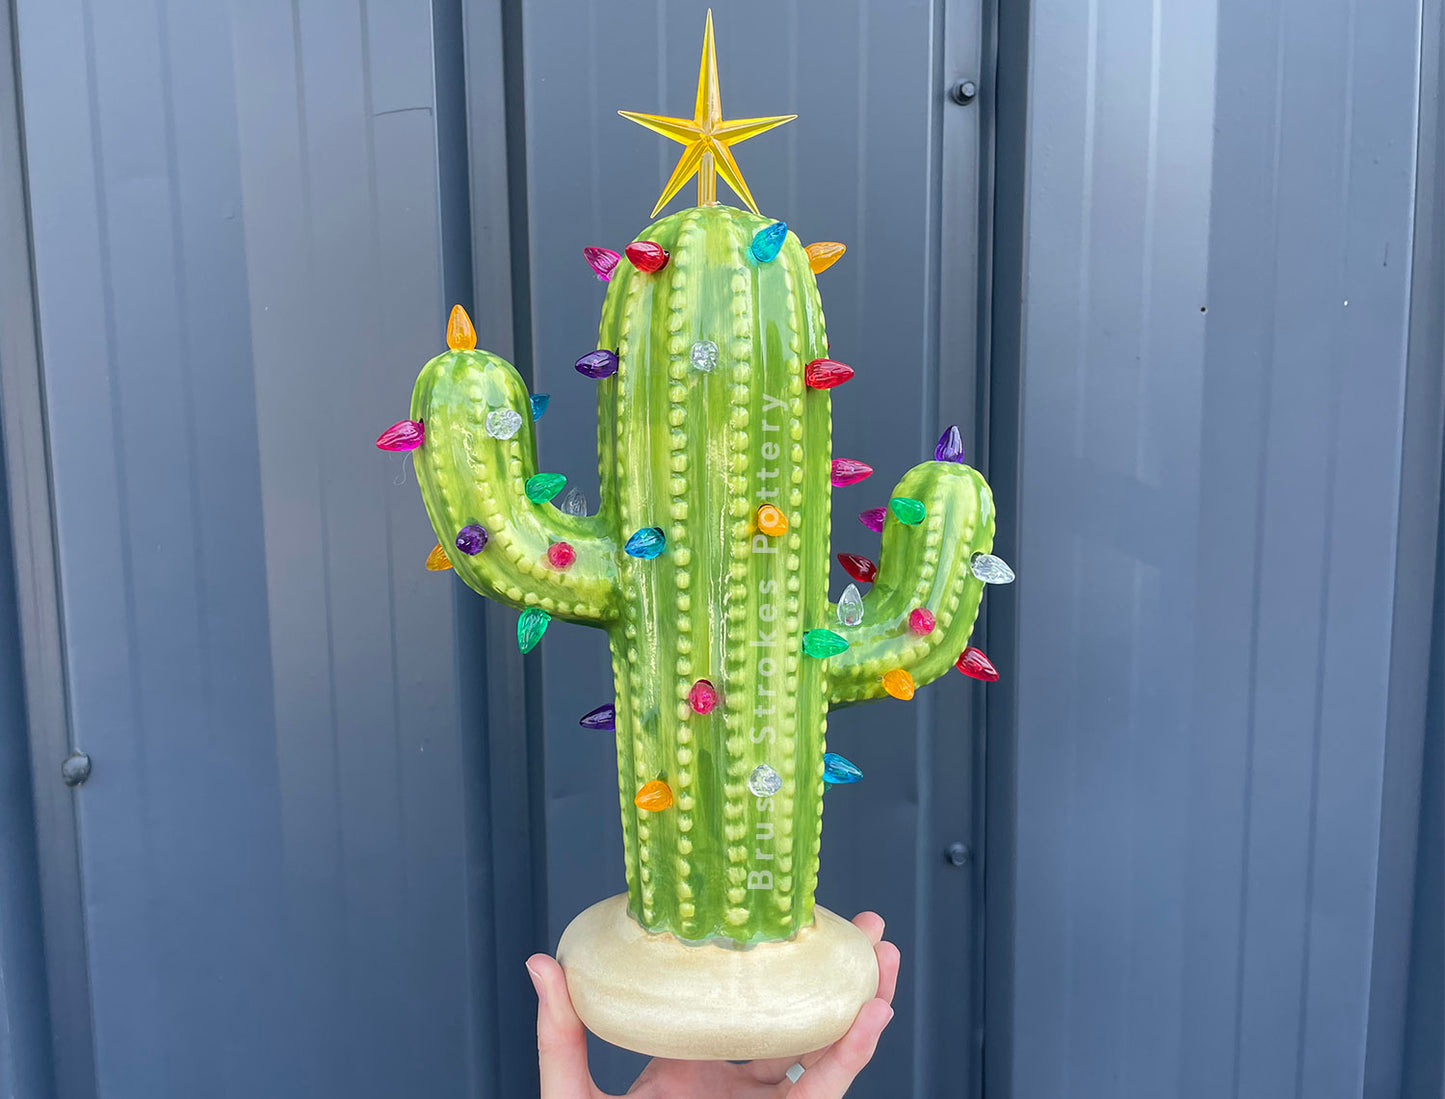 Lighted Ceramic Cactus Tree